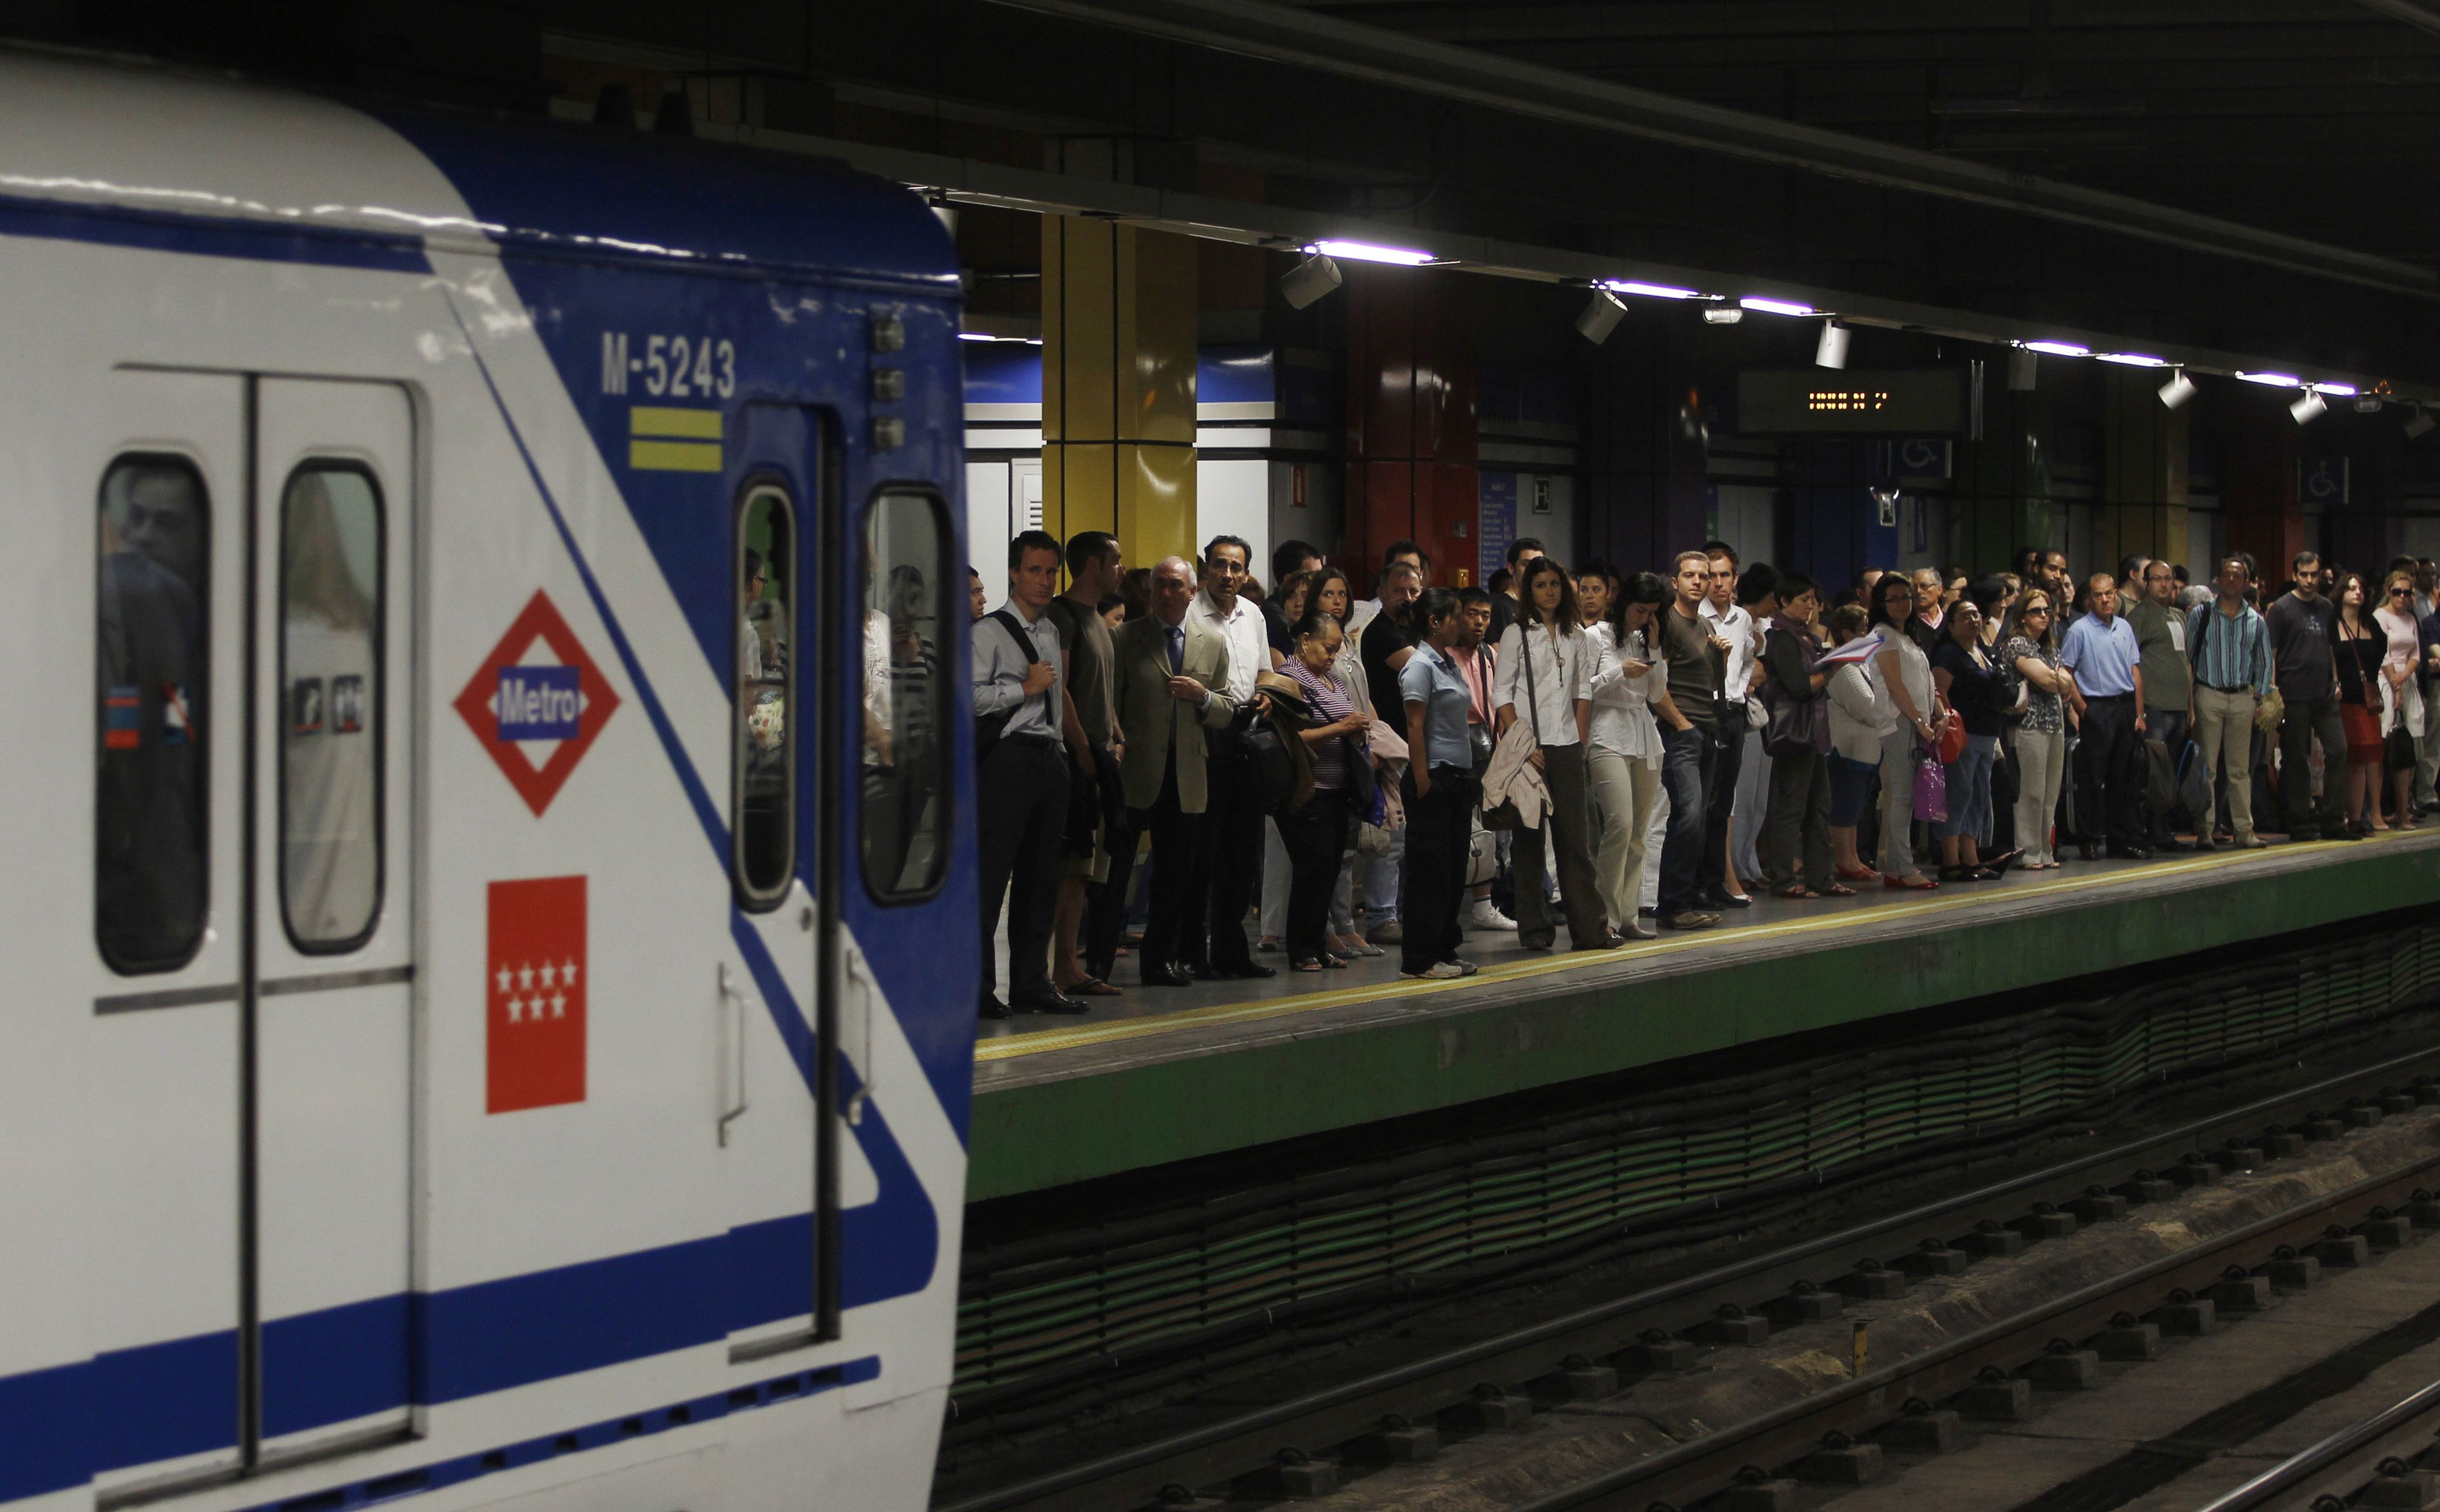 Una estación de Metro de Madrid donde la gente se agolpa en el andén esperando al metro.